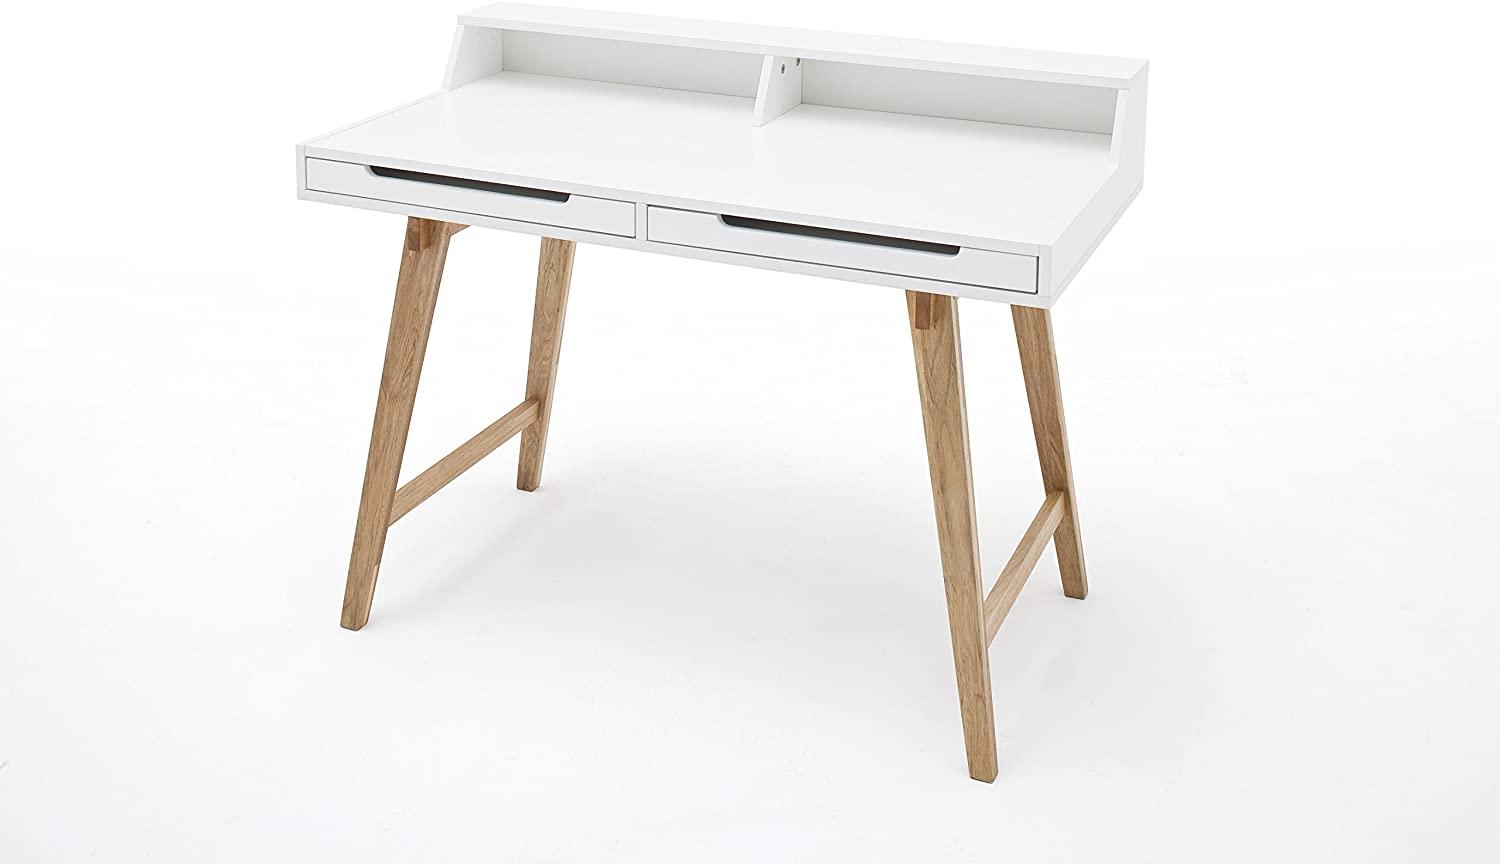 'Tiffy' Schreibtisch, Massivholz weiß matt Lack, 110 x 85 x 58 cm Bild 1